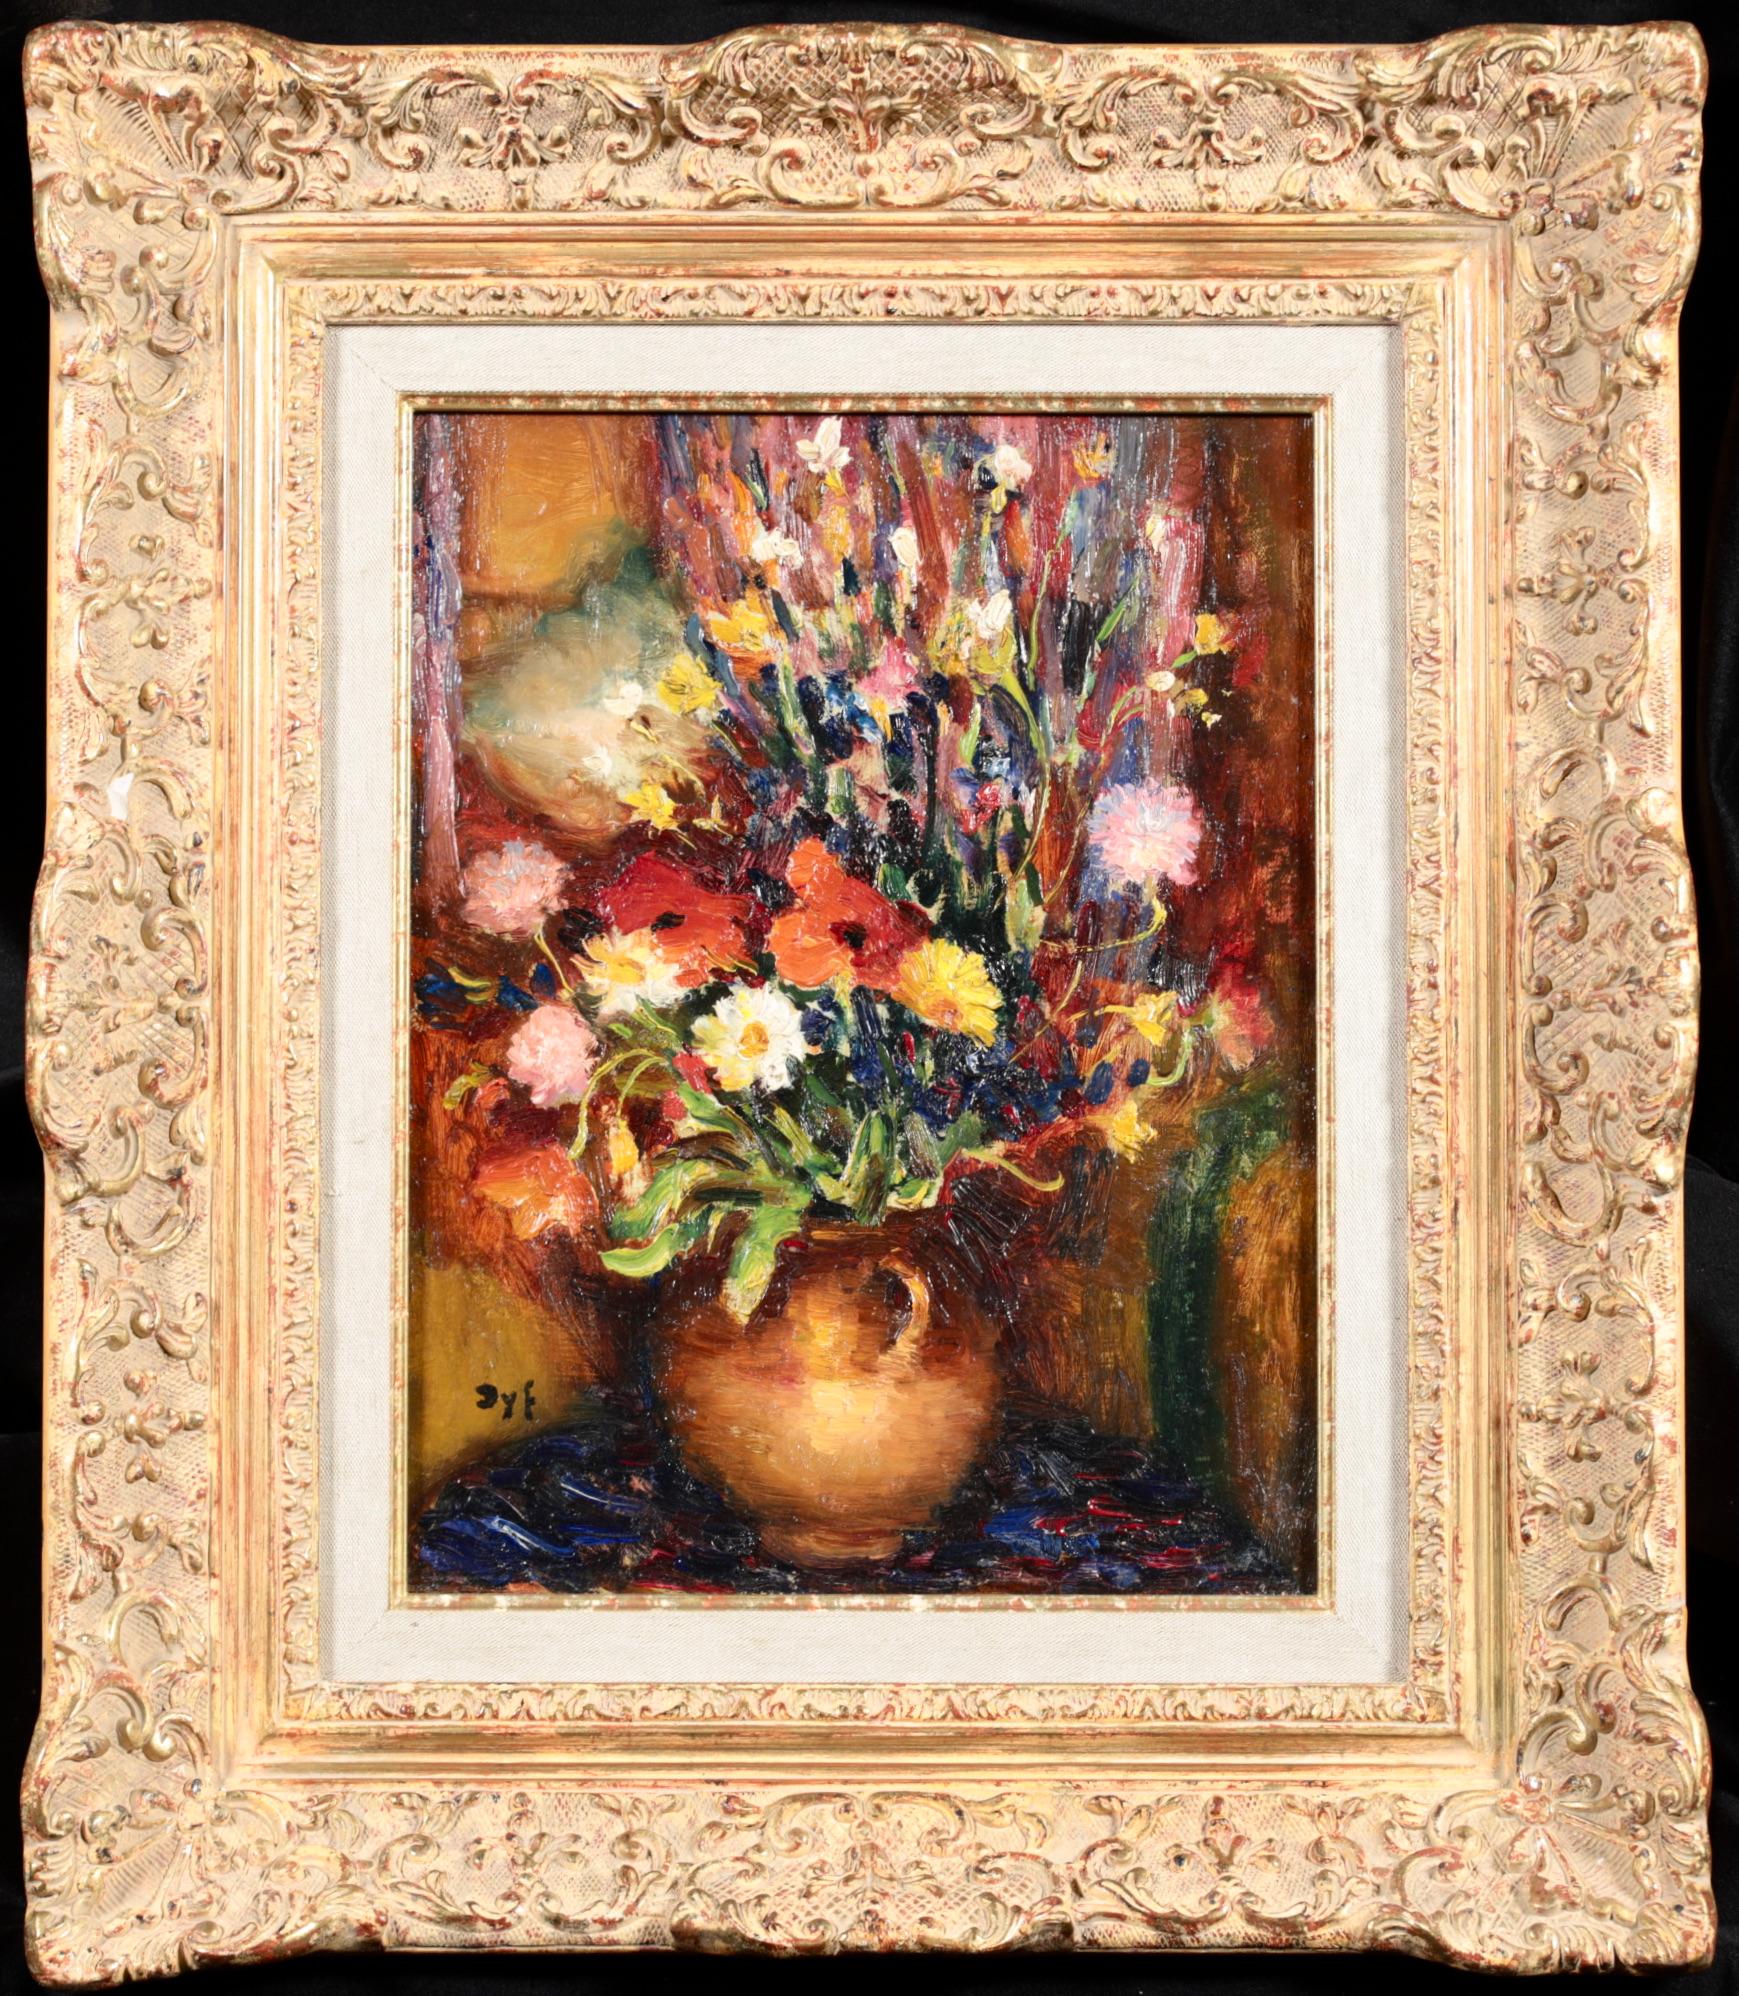 Nature morte post impressionniste signée, huile sur toile circa 1930 du peintre impressionniste français Marcel Dyf. L'œuvre représente des fleurs sauvages dans un vase émaillé. Une pièce merveilleuse.

Signature :
Signé en bas à gauche

Dimensions